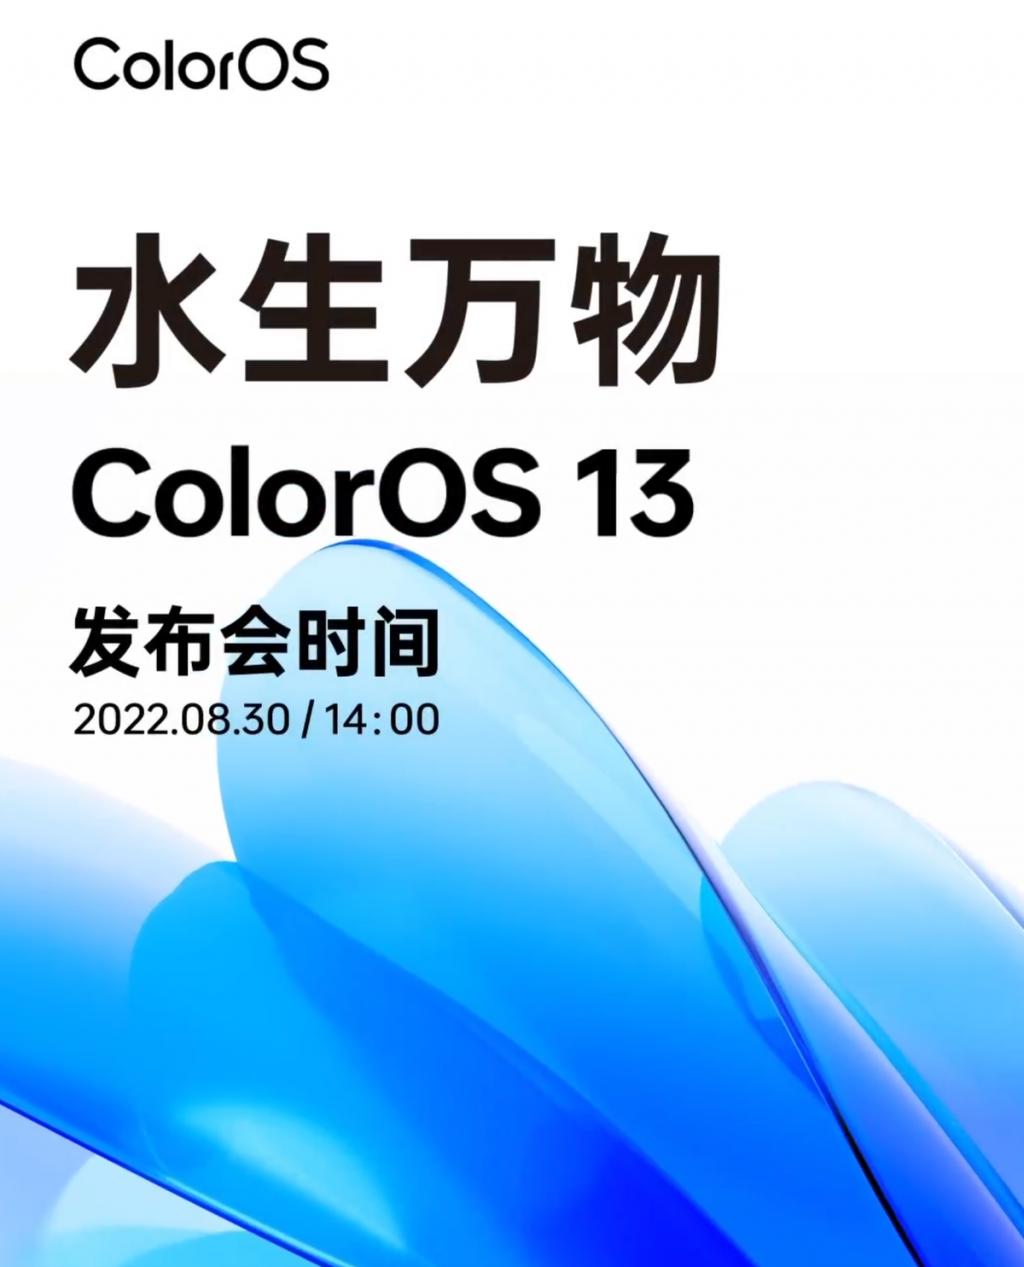 8 月 30 日 ColorOS 13 即将发布，水生设计带来全新的视觉盛宴